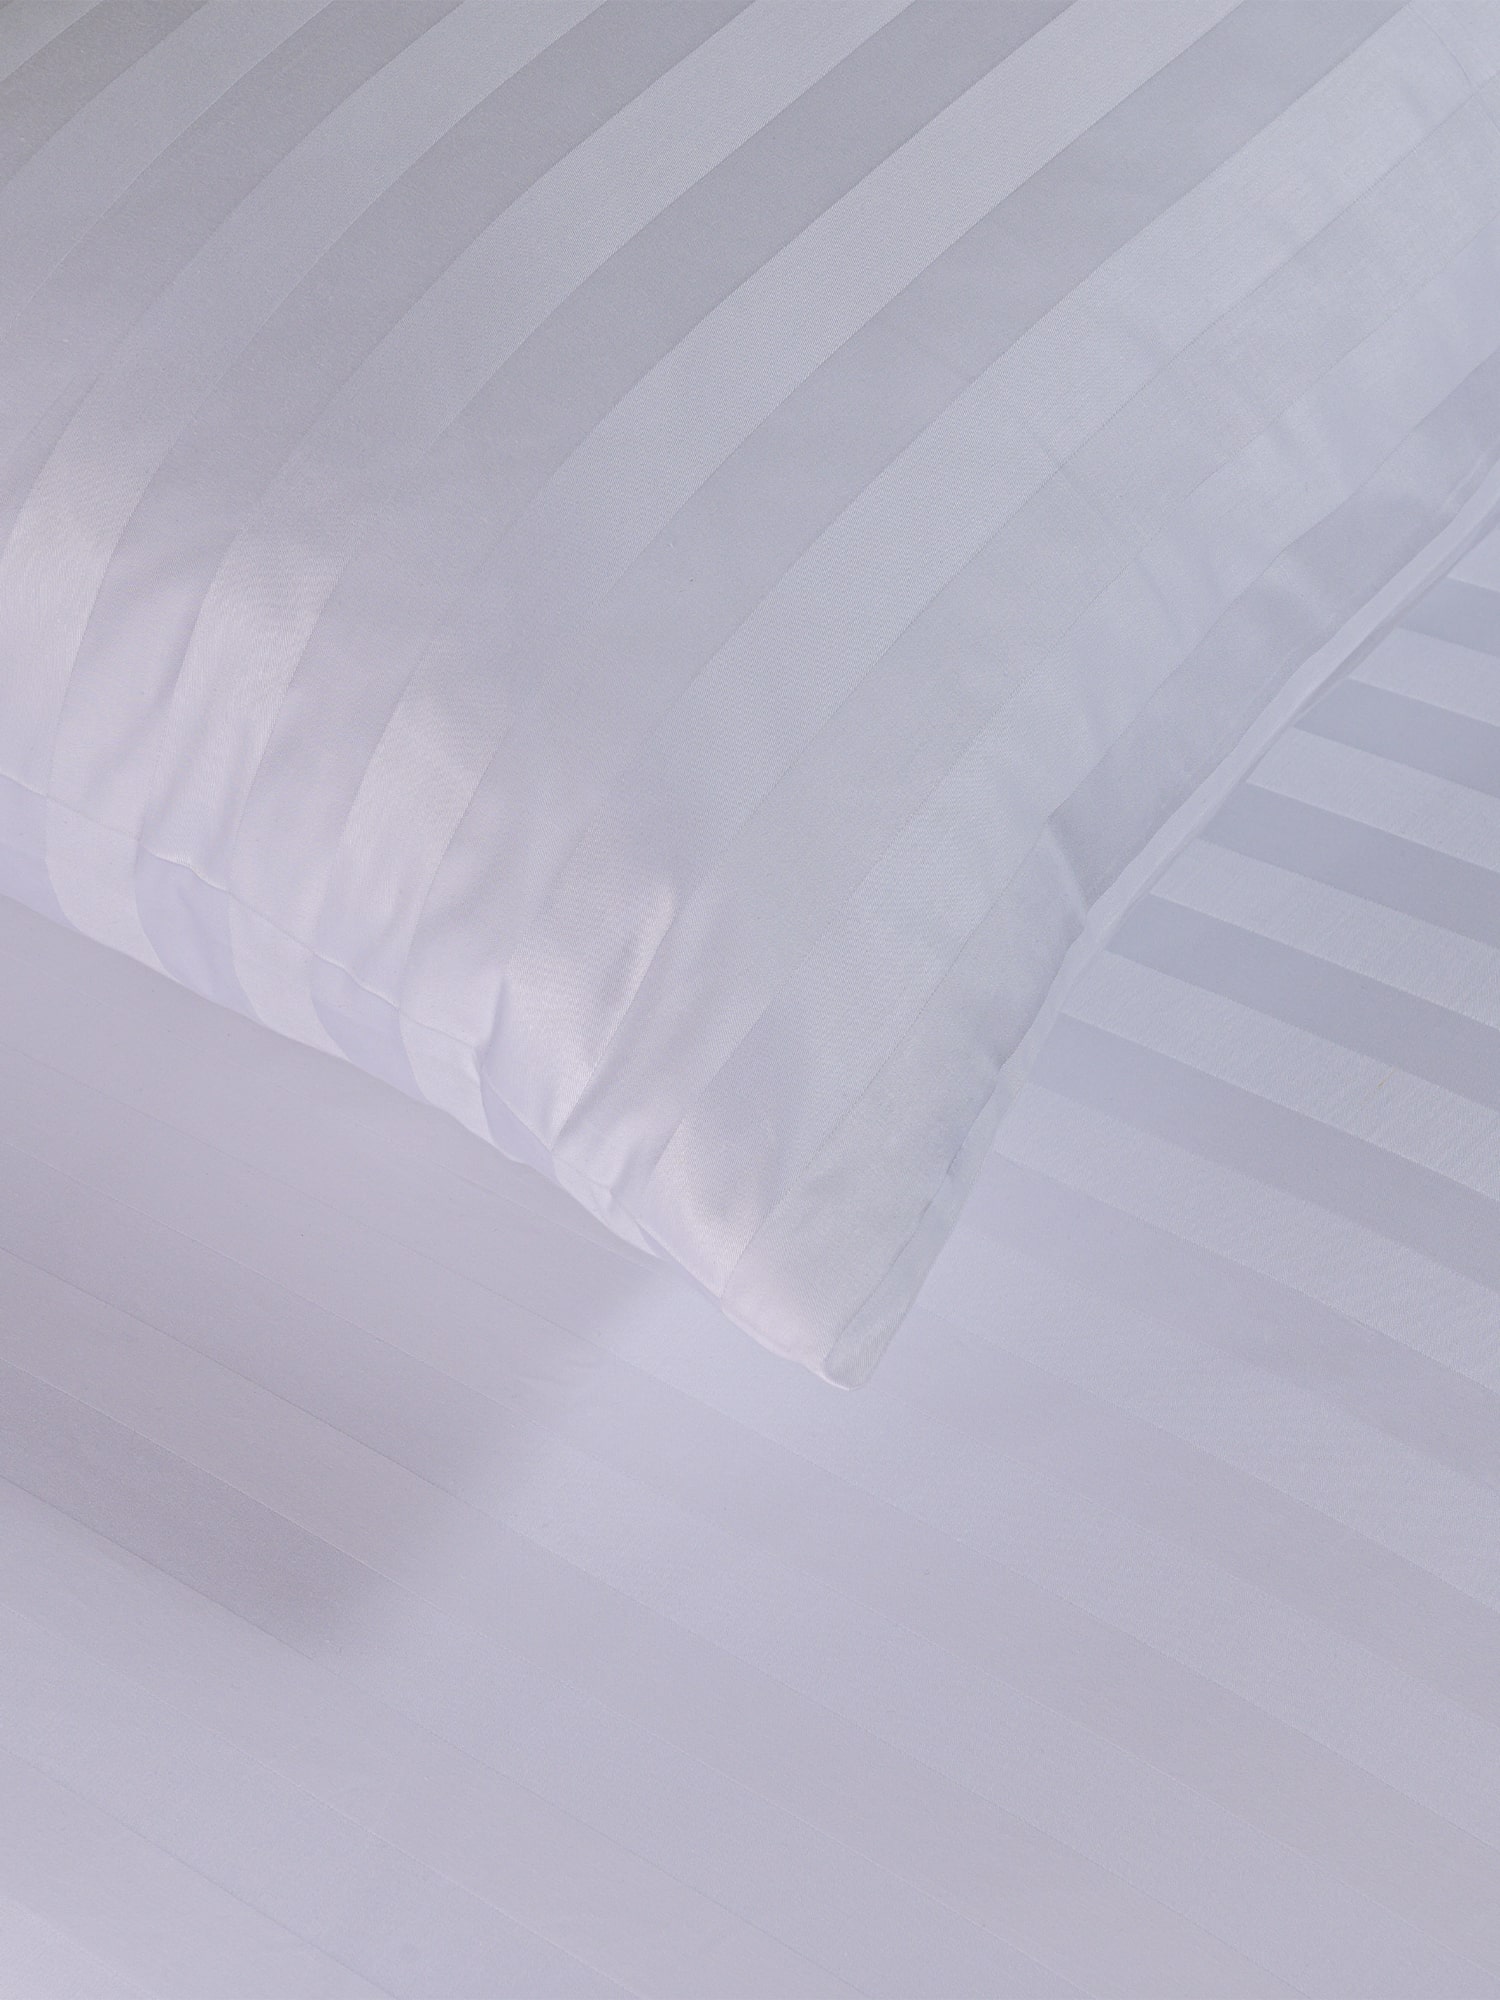 posteljina bijela pruge damast 100 posto pamuk sjajna posteljina za apartmane